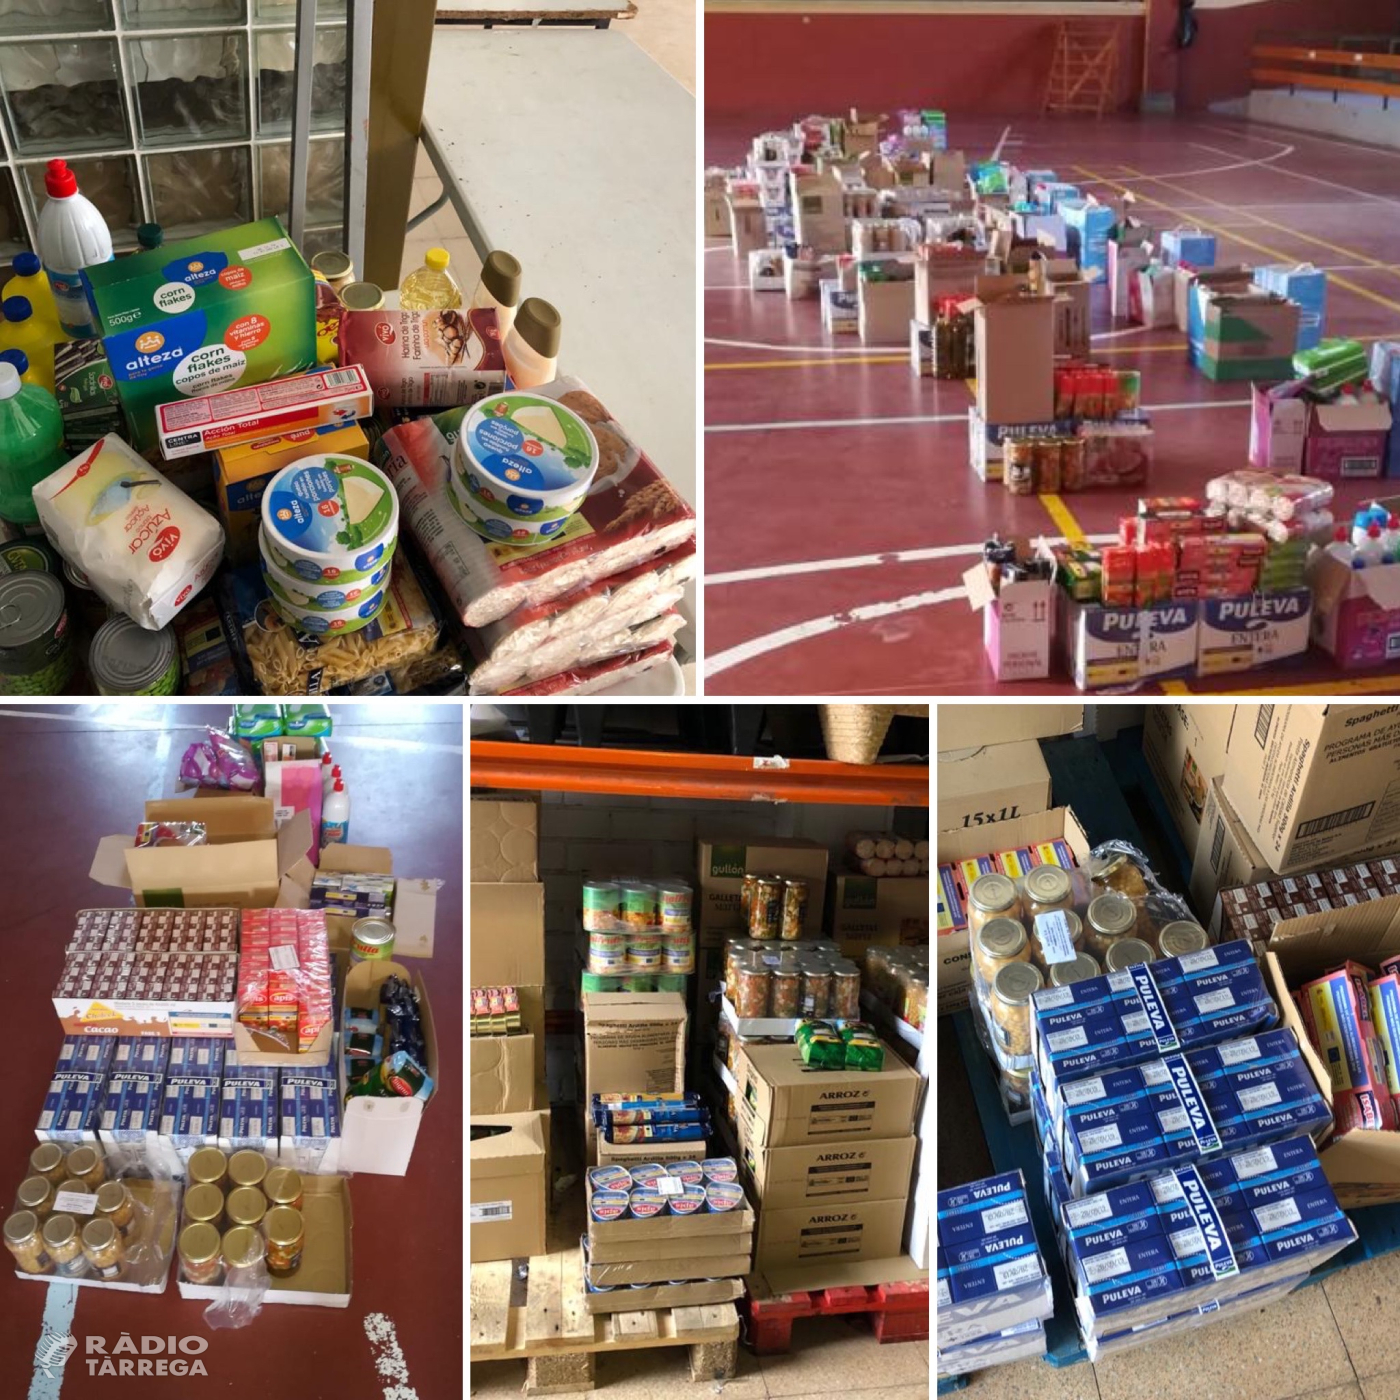 48 famílies sol·liciten ajuda per aliments a Serveis Socials del Consell Comarcal de l'Urgell des de l'inici de la pandèmia